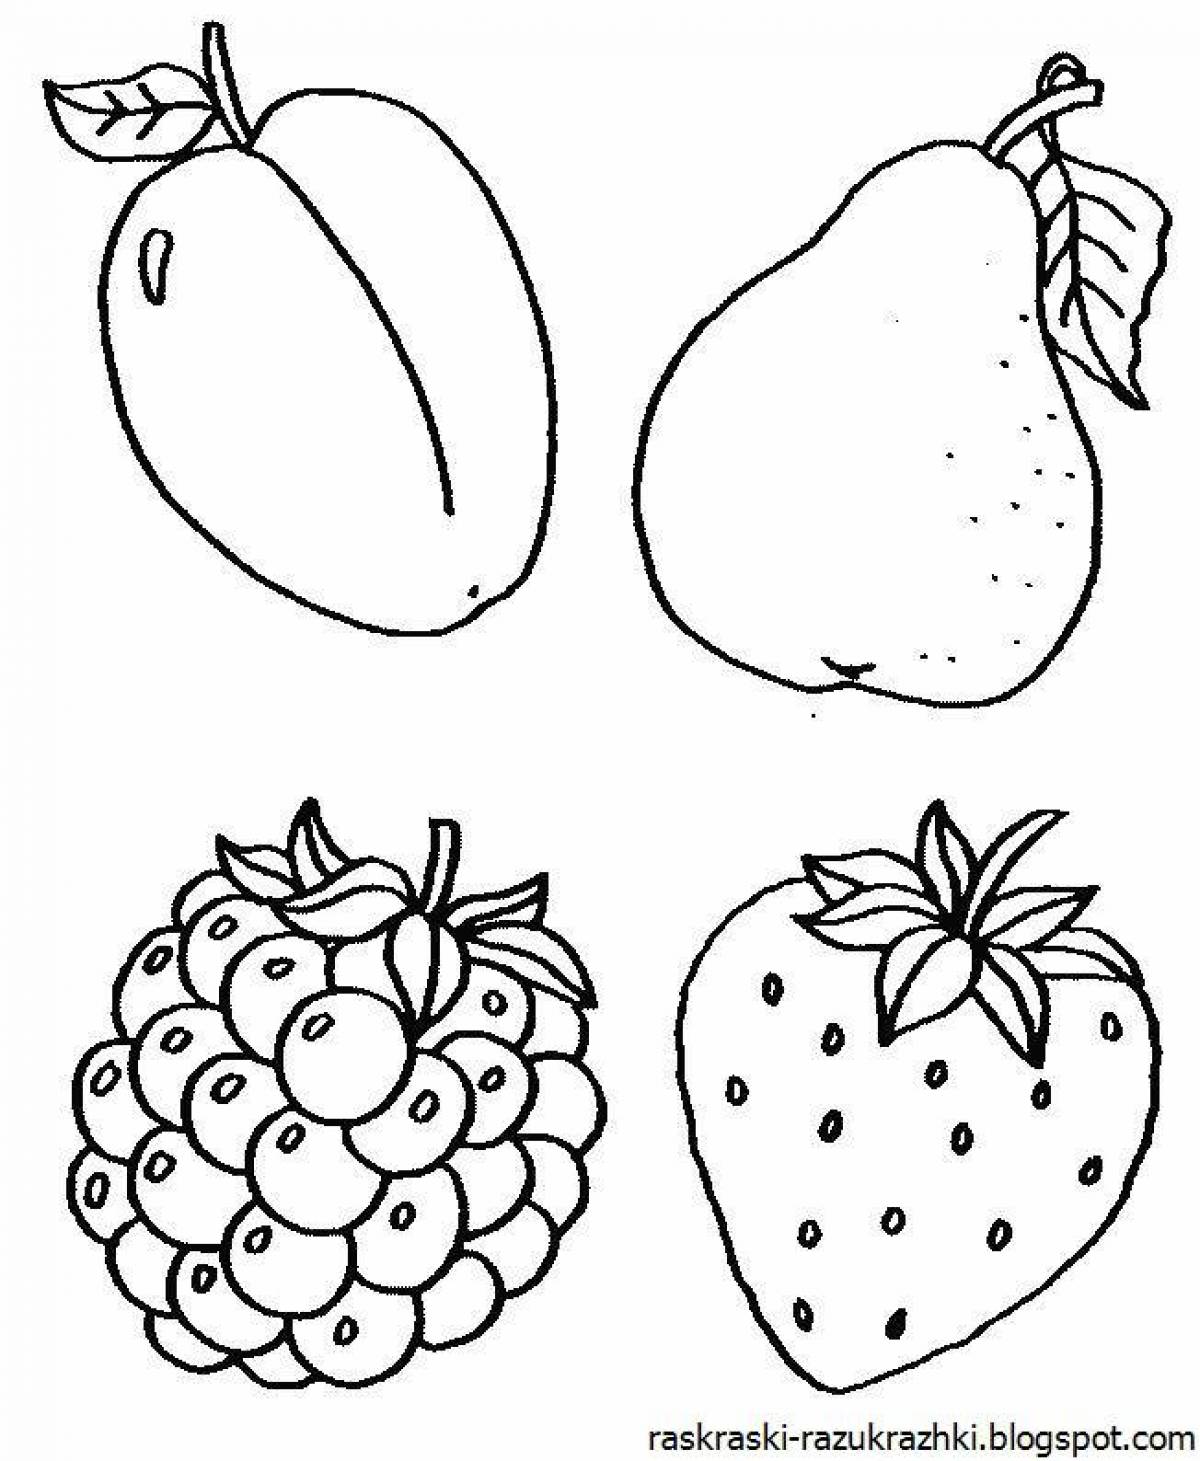 Раскраски с фруктами для детей 3-4 лет